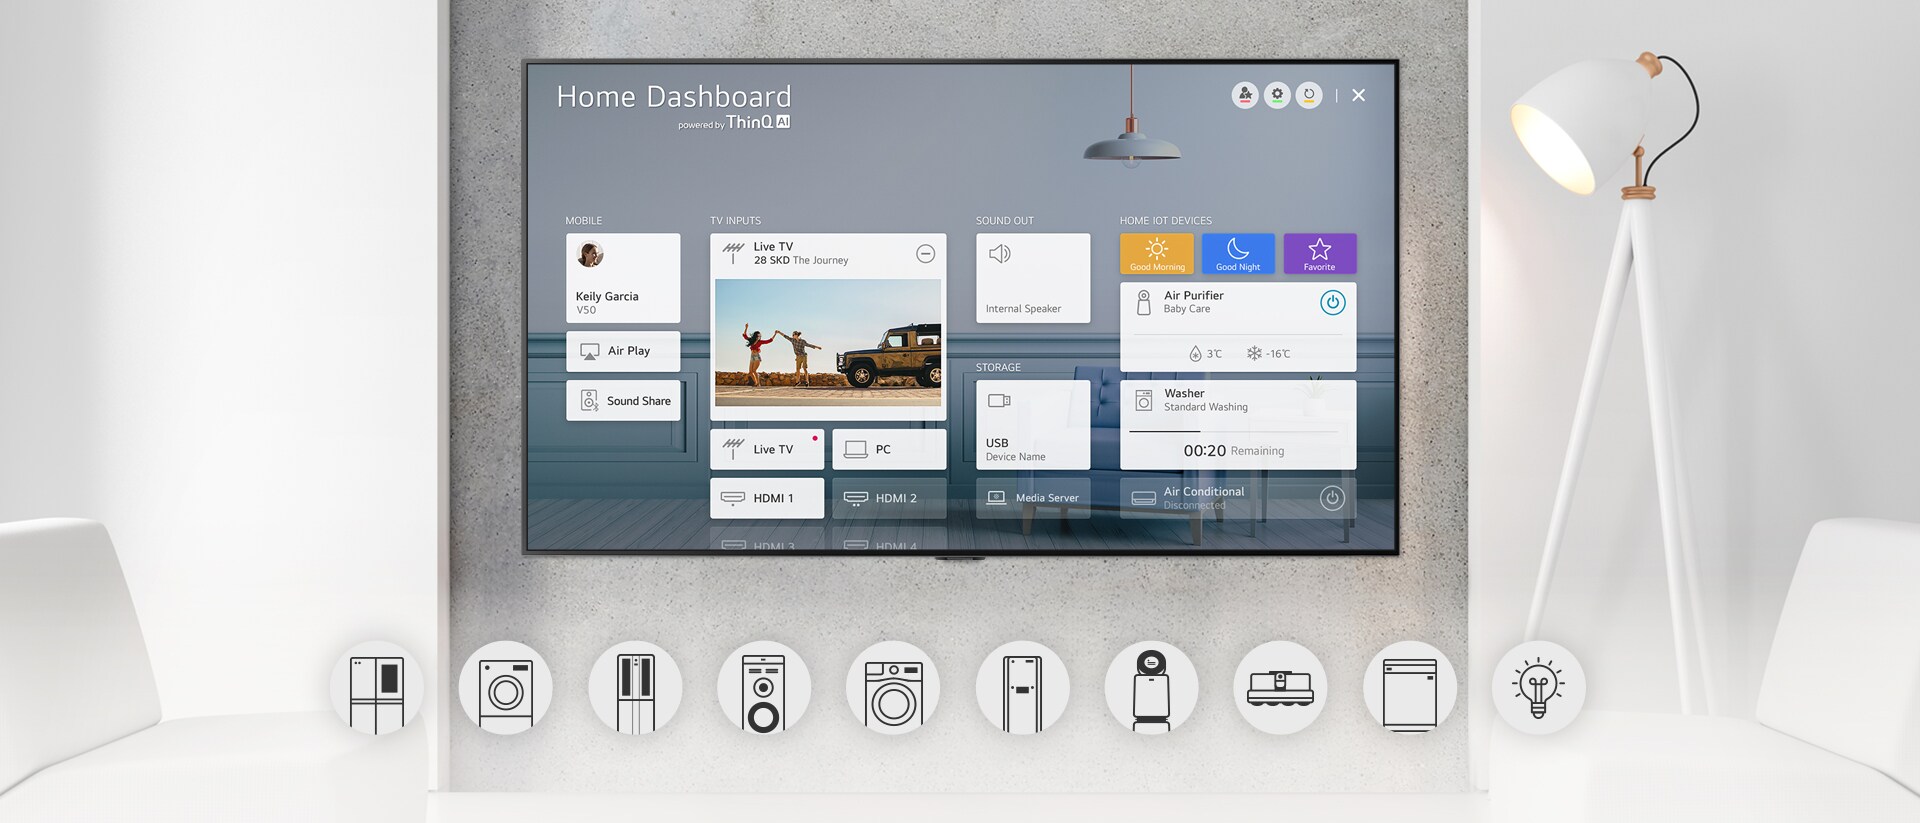 Wandtelevisie met Home Dashboard en grafische logo's van het apparaat eronder